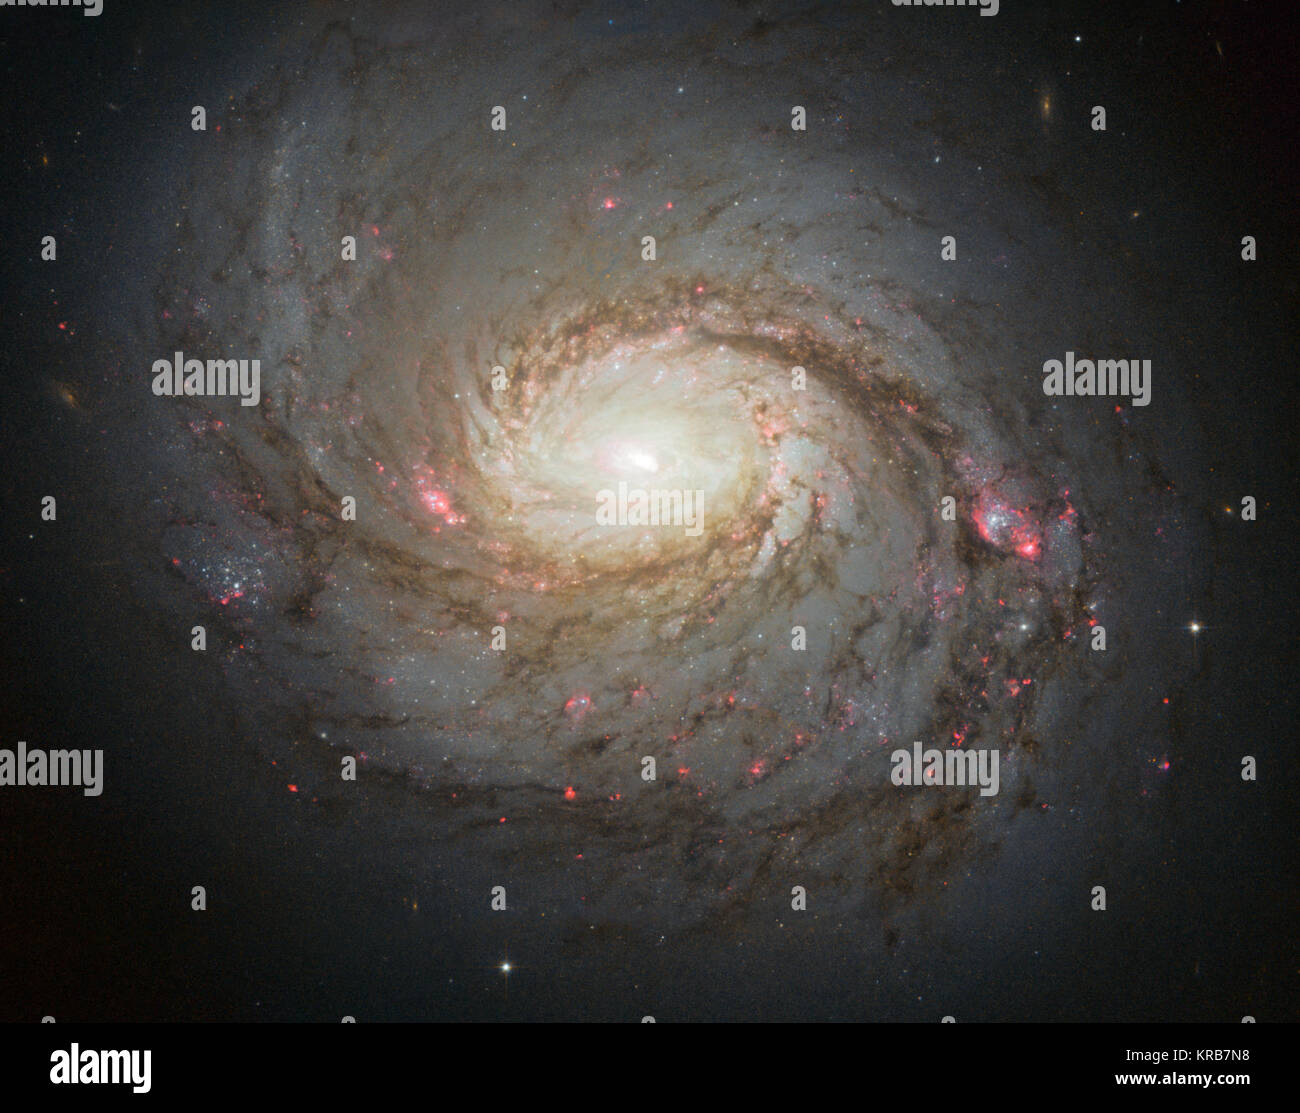 Die NASA/ESA Hubble Space Telescope hat dieses lebendige Bild der Spiralgalaxie Messier 77 - eine Galaxie im Sternbild Cetus, rund 45 Millionen Licht eingefangen - Jahre von uns entfernt. Die Streifen in Rot und Blau im Bild Taschen Highlight der Sternentstehung entlang der pinwheeling Waffen, mit dunklen Staub Gassen ausdehnend über starry Zentrum der Galaxie. Die Galaxie gehört zu einer Klasse von Galaxien als Seyfert Galaxien, die in hohem Grade Gas ionisiert haben um ein intensiv aktiven Zentrum bekannt. Messier 77 Spiralgalaxie durch HST Stockfoto